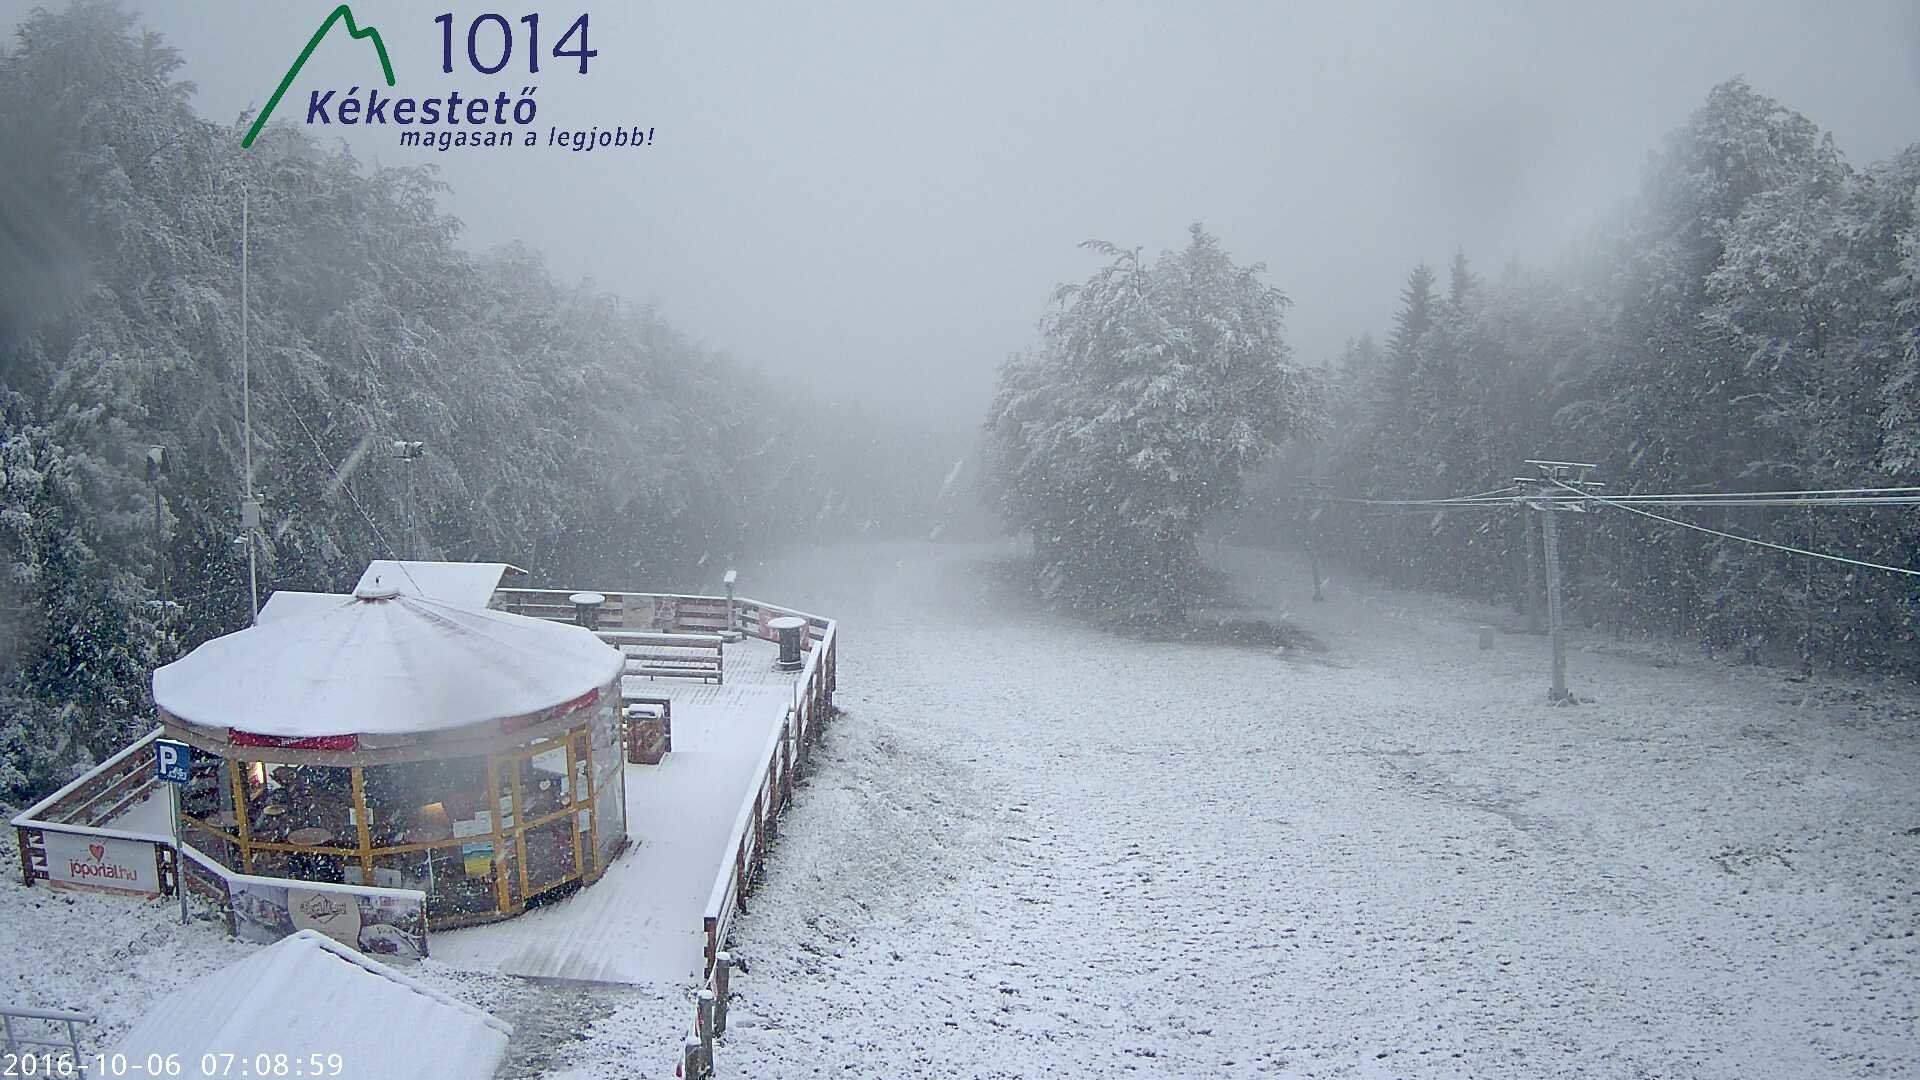 A Kékestetőn már tegnap délután óta havazik, reggelre 3-4 cm hó borította a hegycsúcsot.